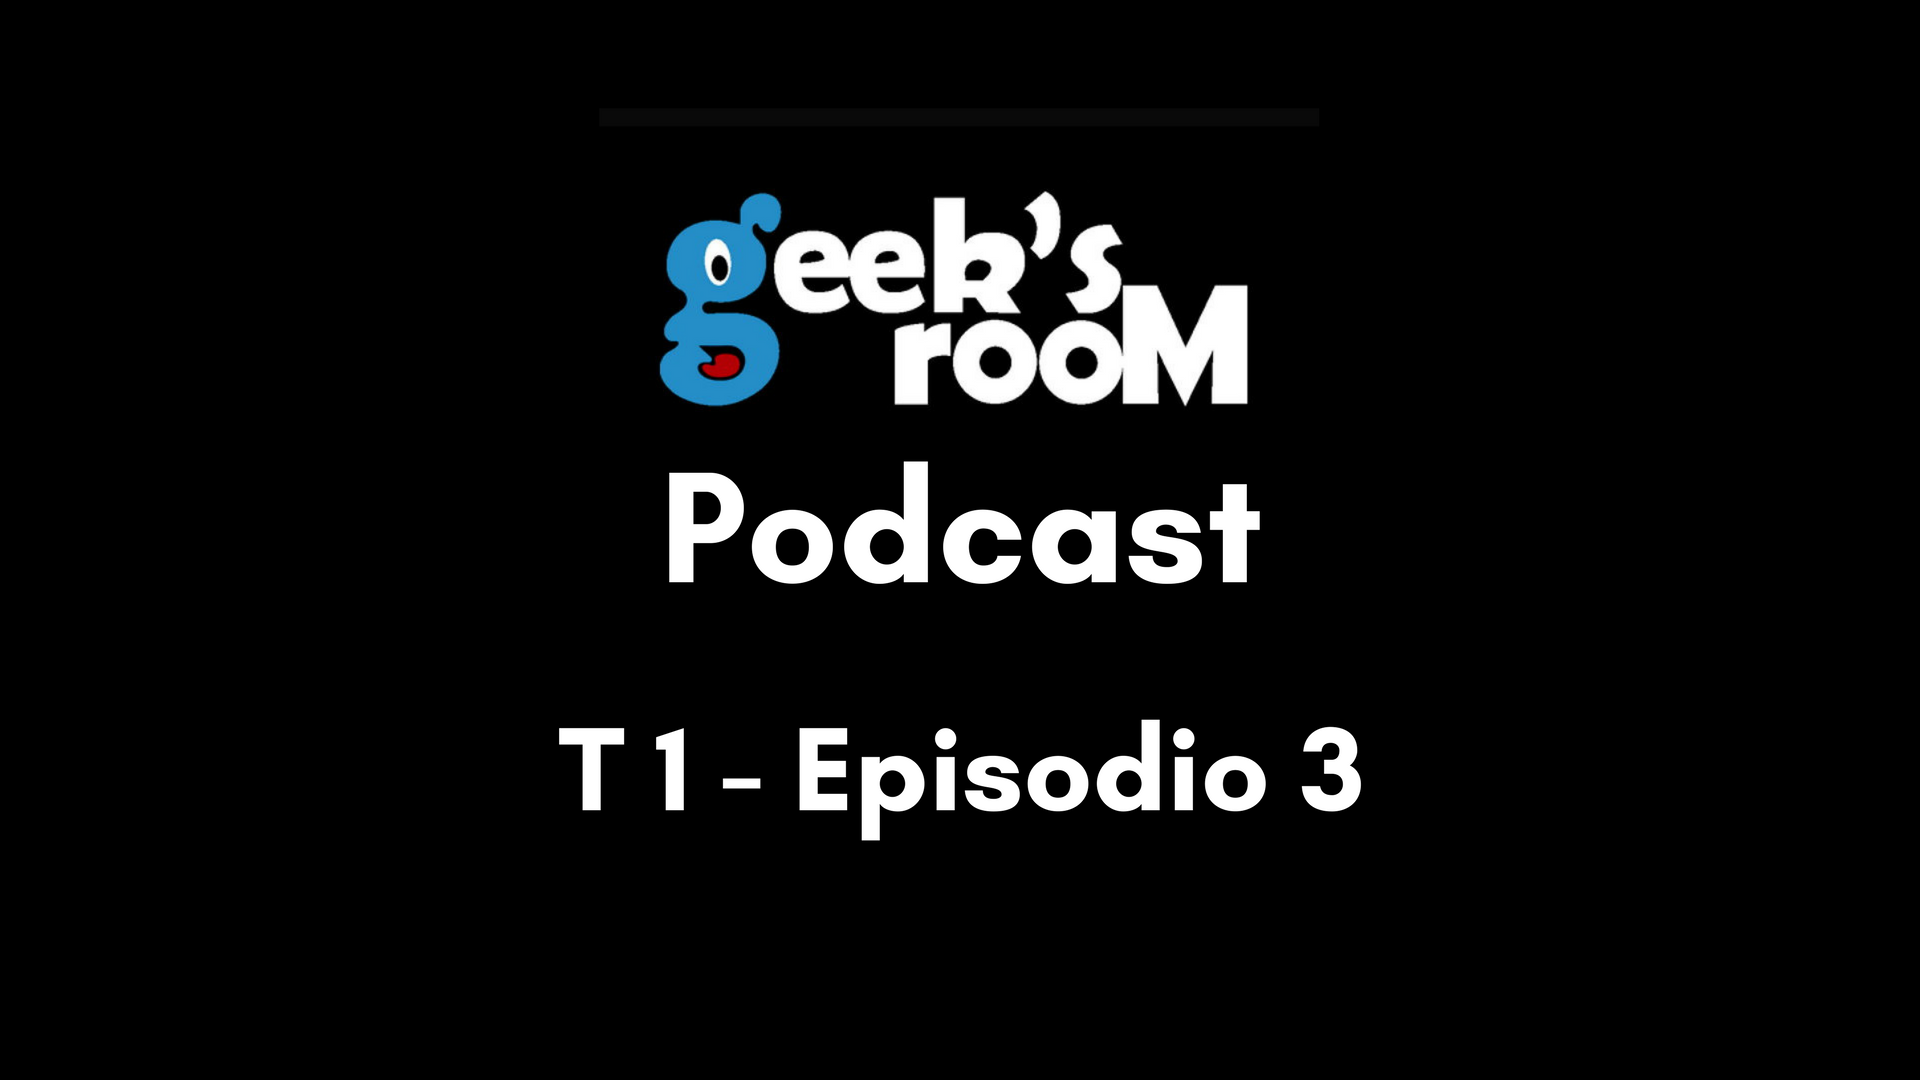 Geeksroom Podcast T1 Episodio 3: SXSW, Las Noticias más Importantes y Serverless